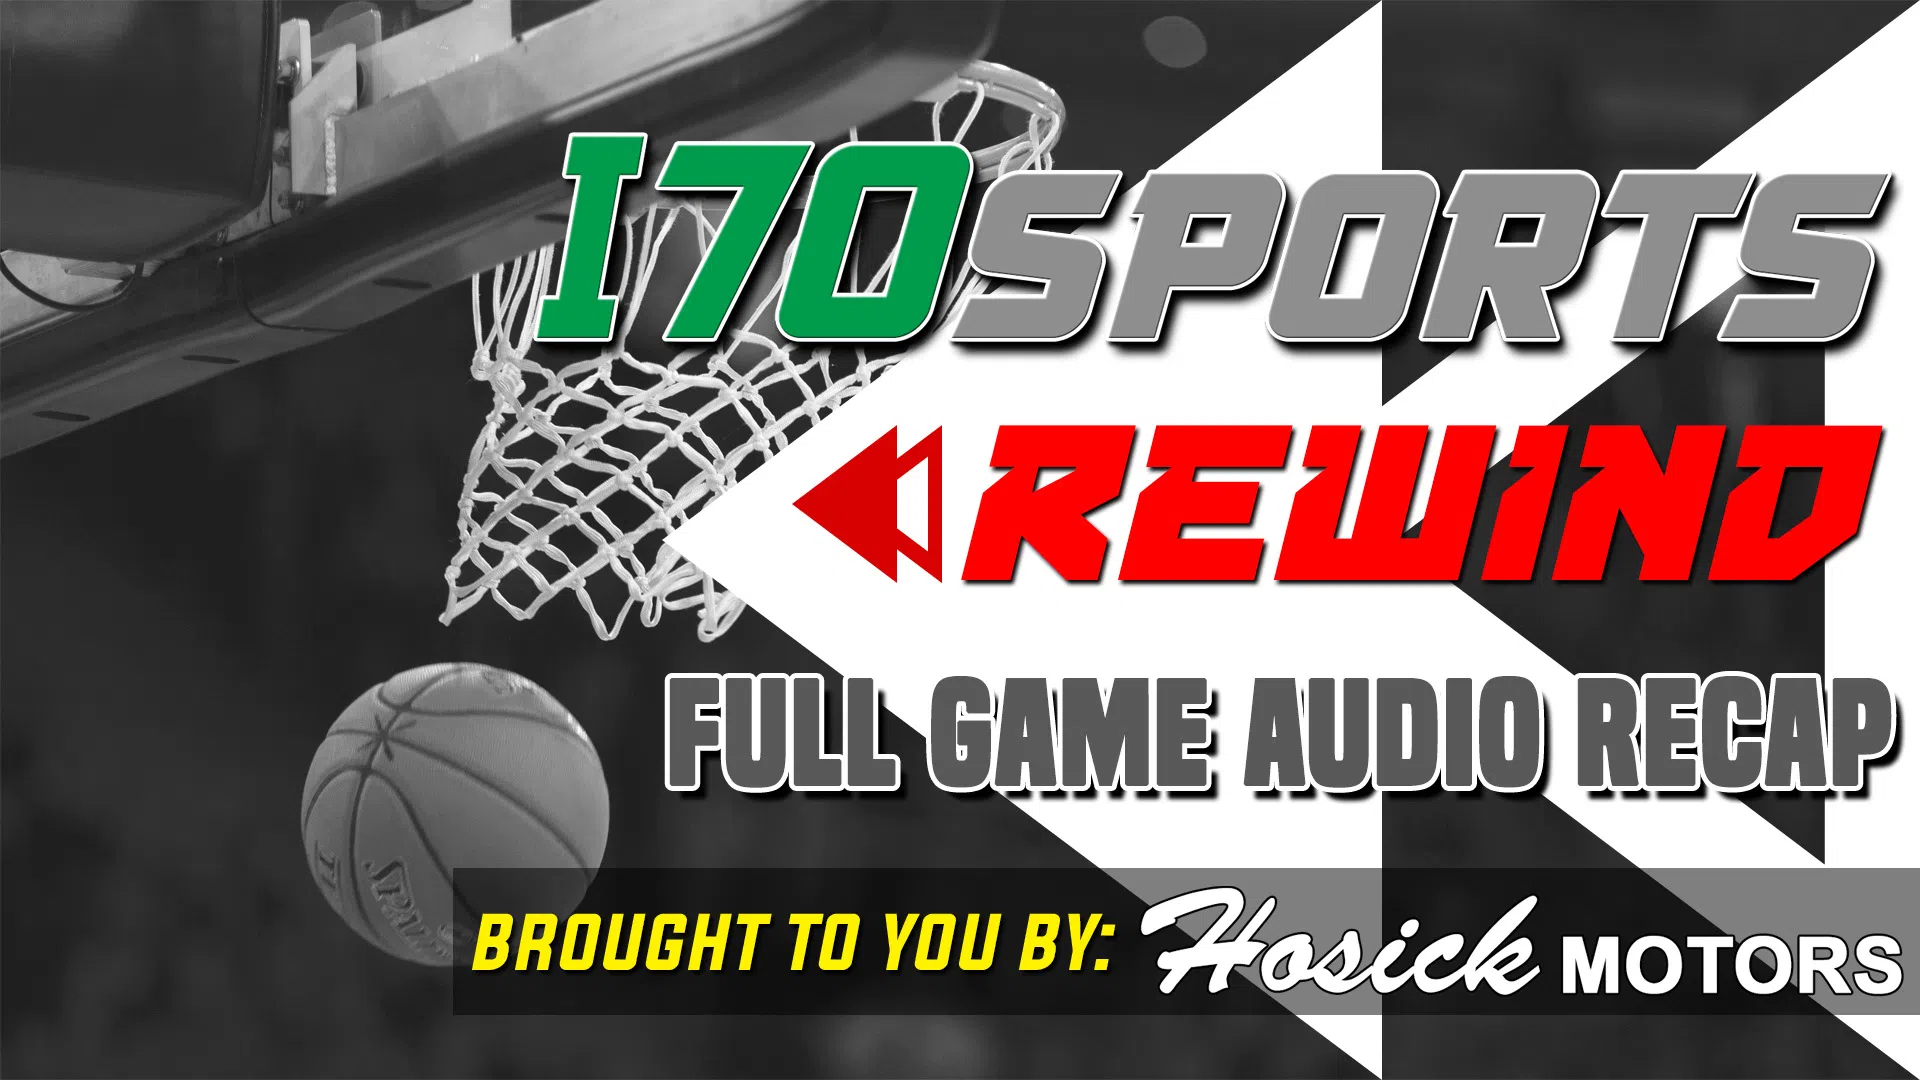 Full Game Audio-Altamont vs. SEB Boys Basketball